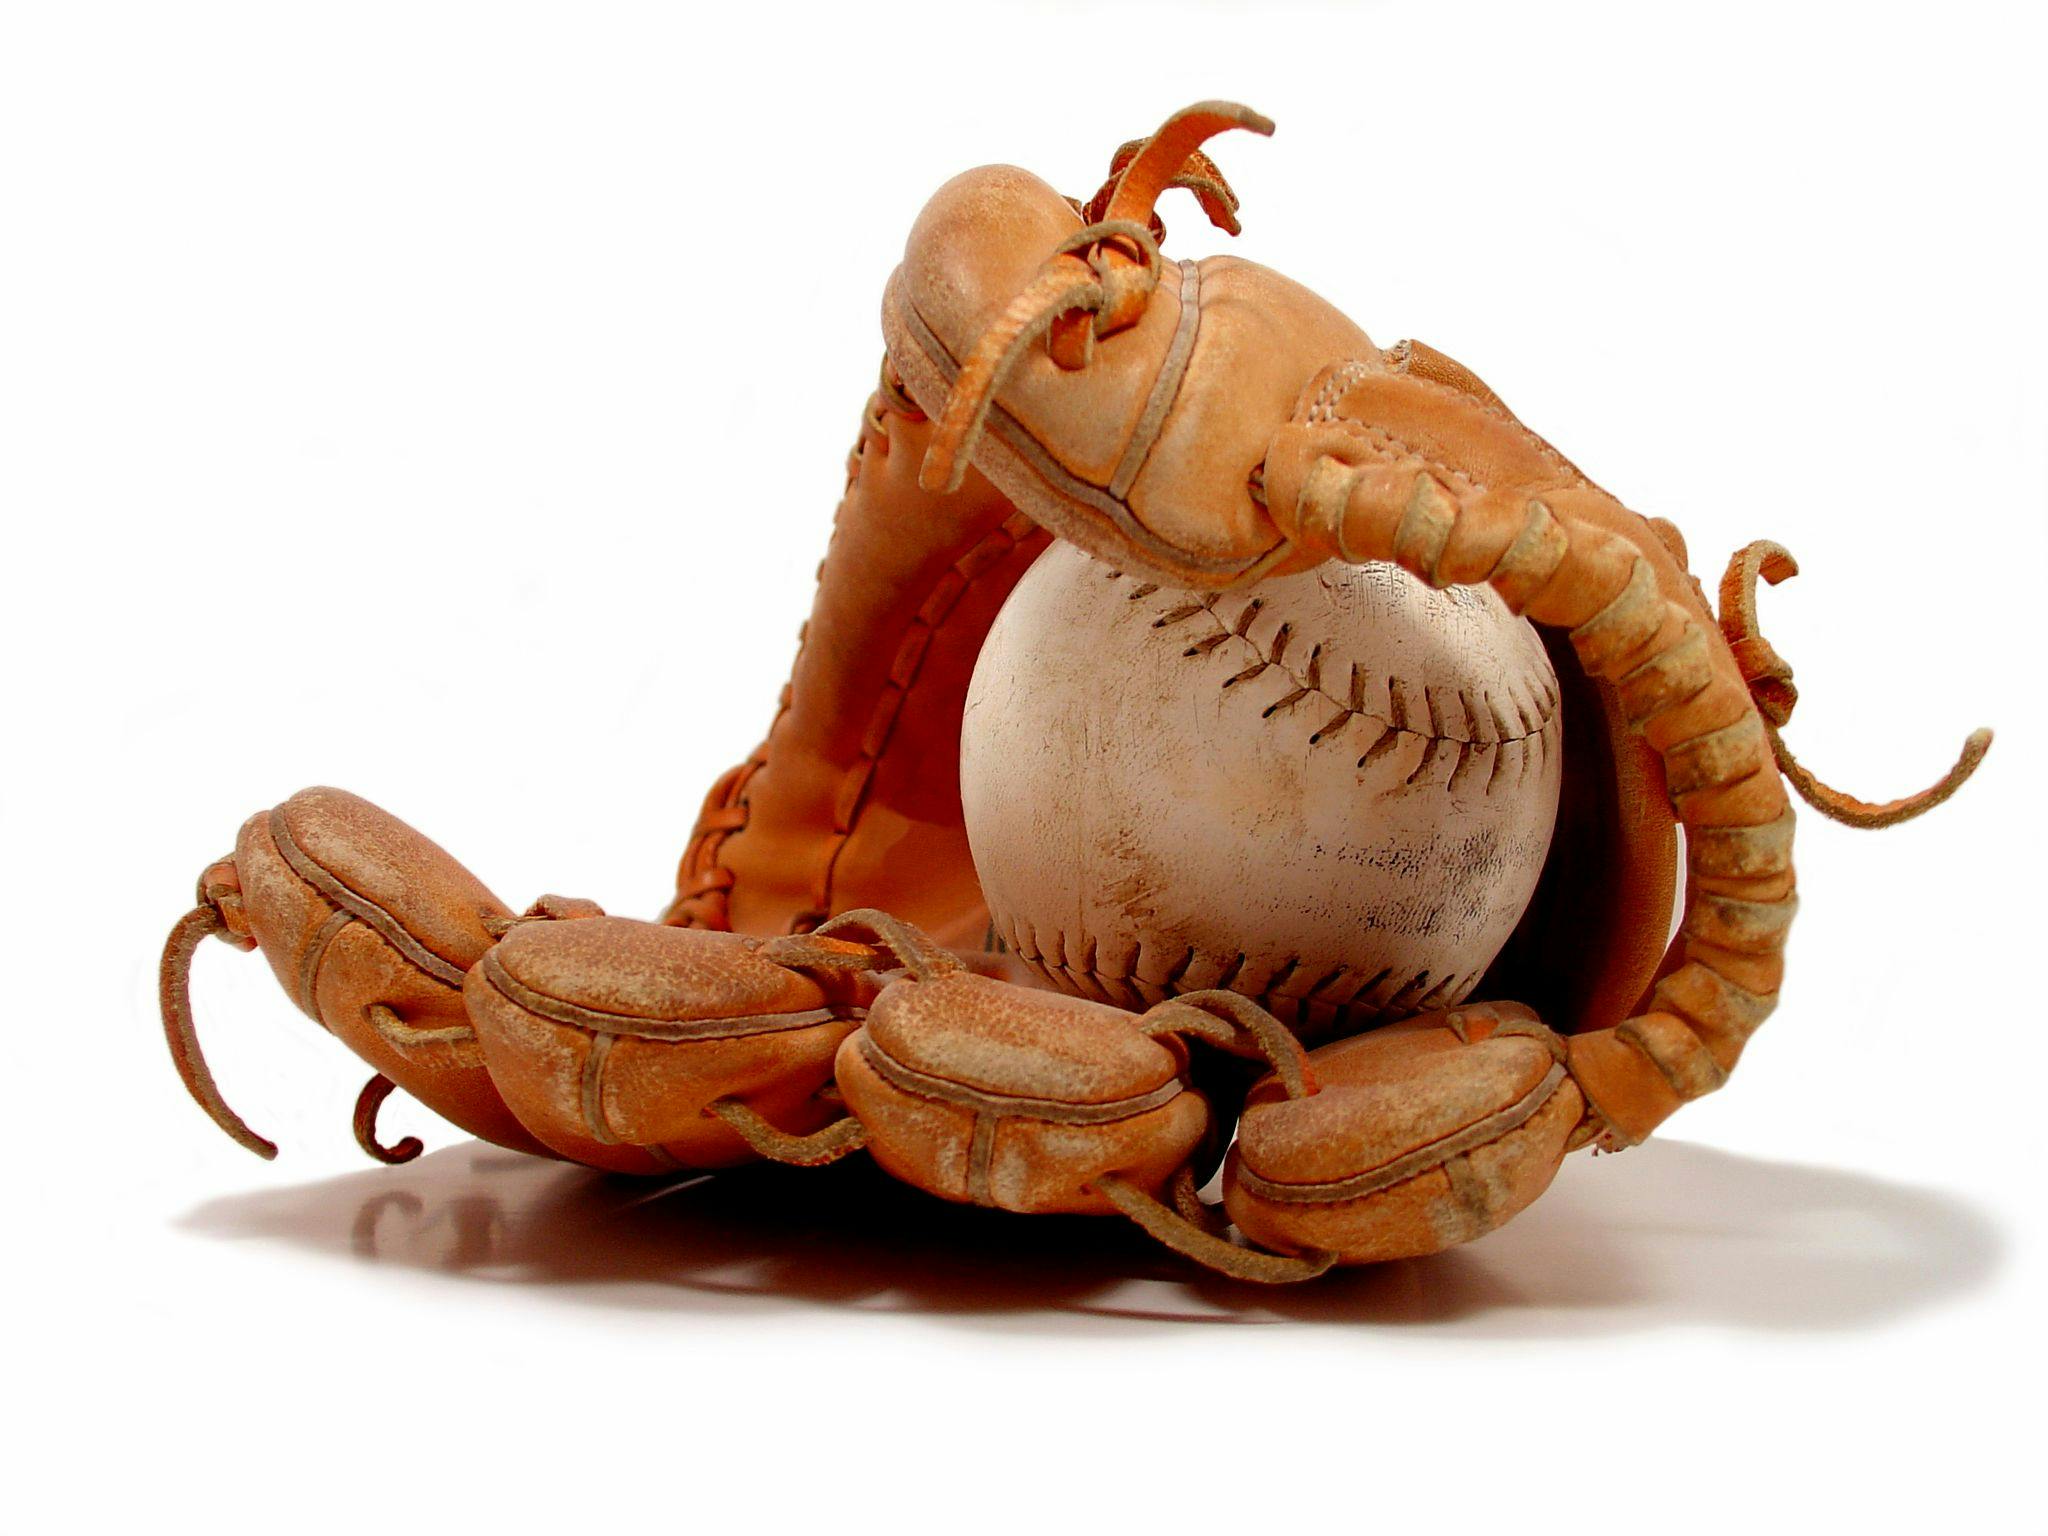 baseball in glove